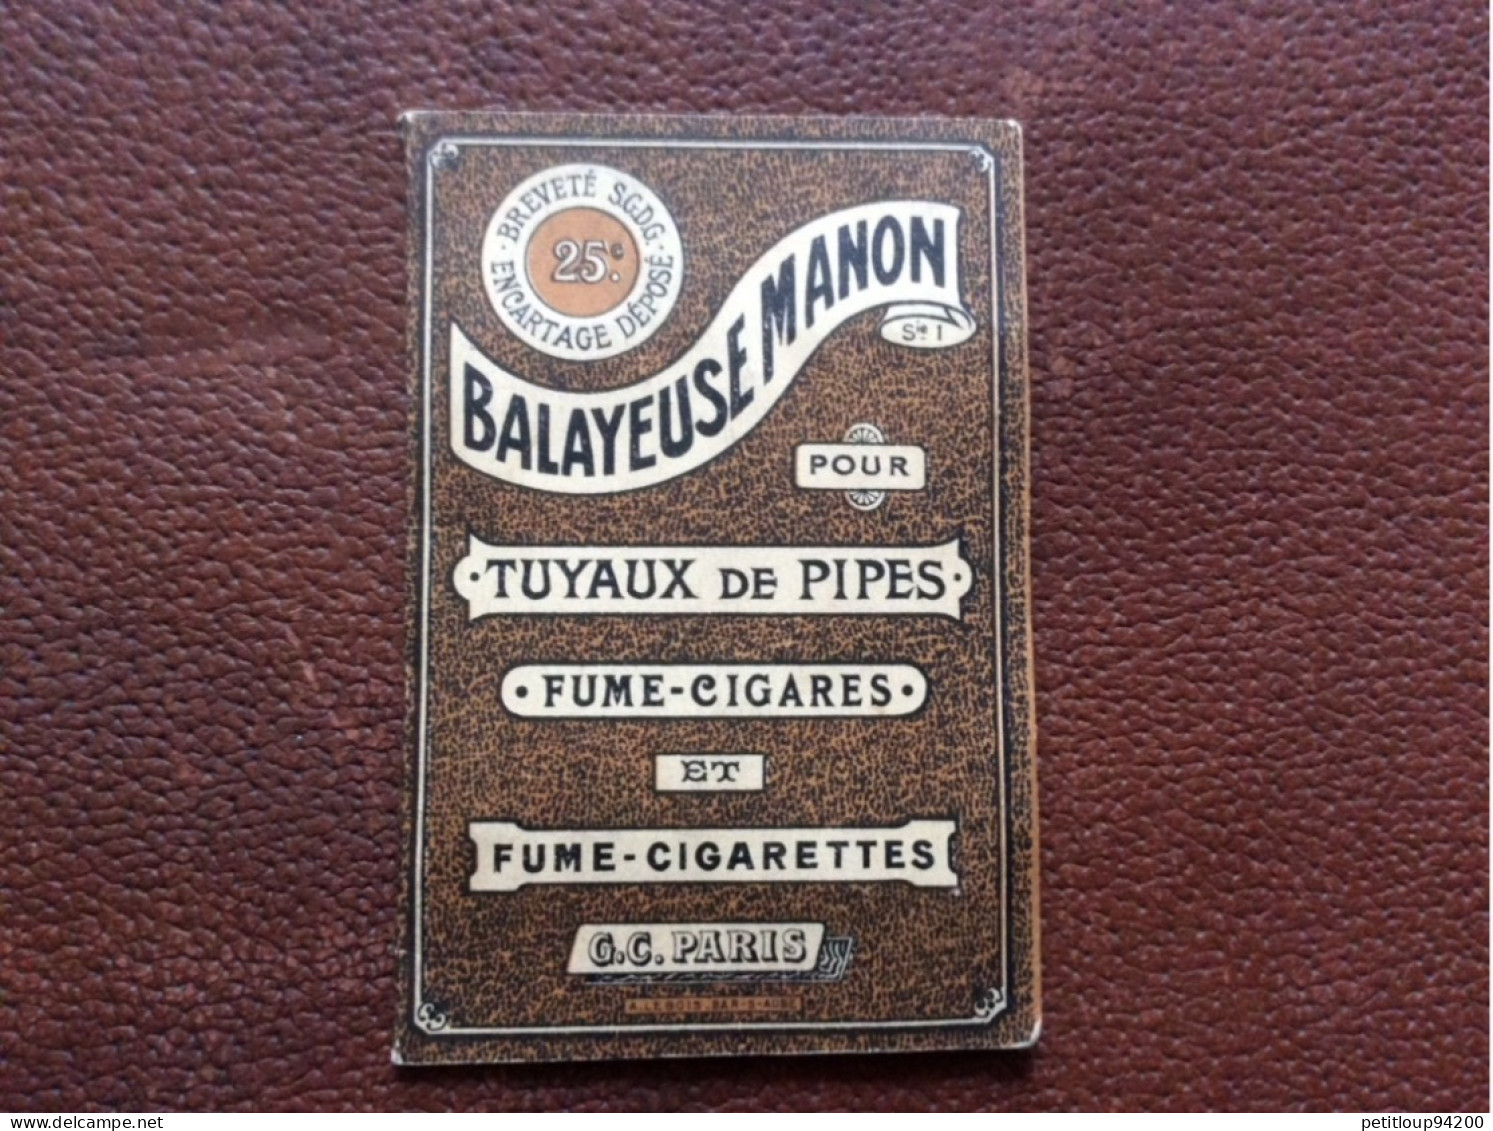 BALAYEUSE MANON  Tuyaux De Pipes  Fume-Cigares  Fume-Cigarettes  G.C  Paris  A.LEBOIS  Bar-s-Aube - Zonder Classificatie